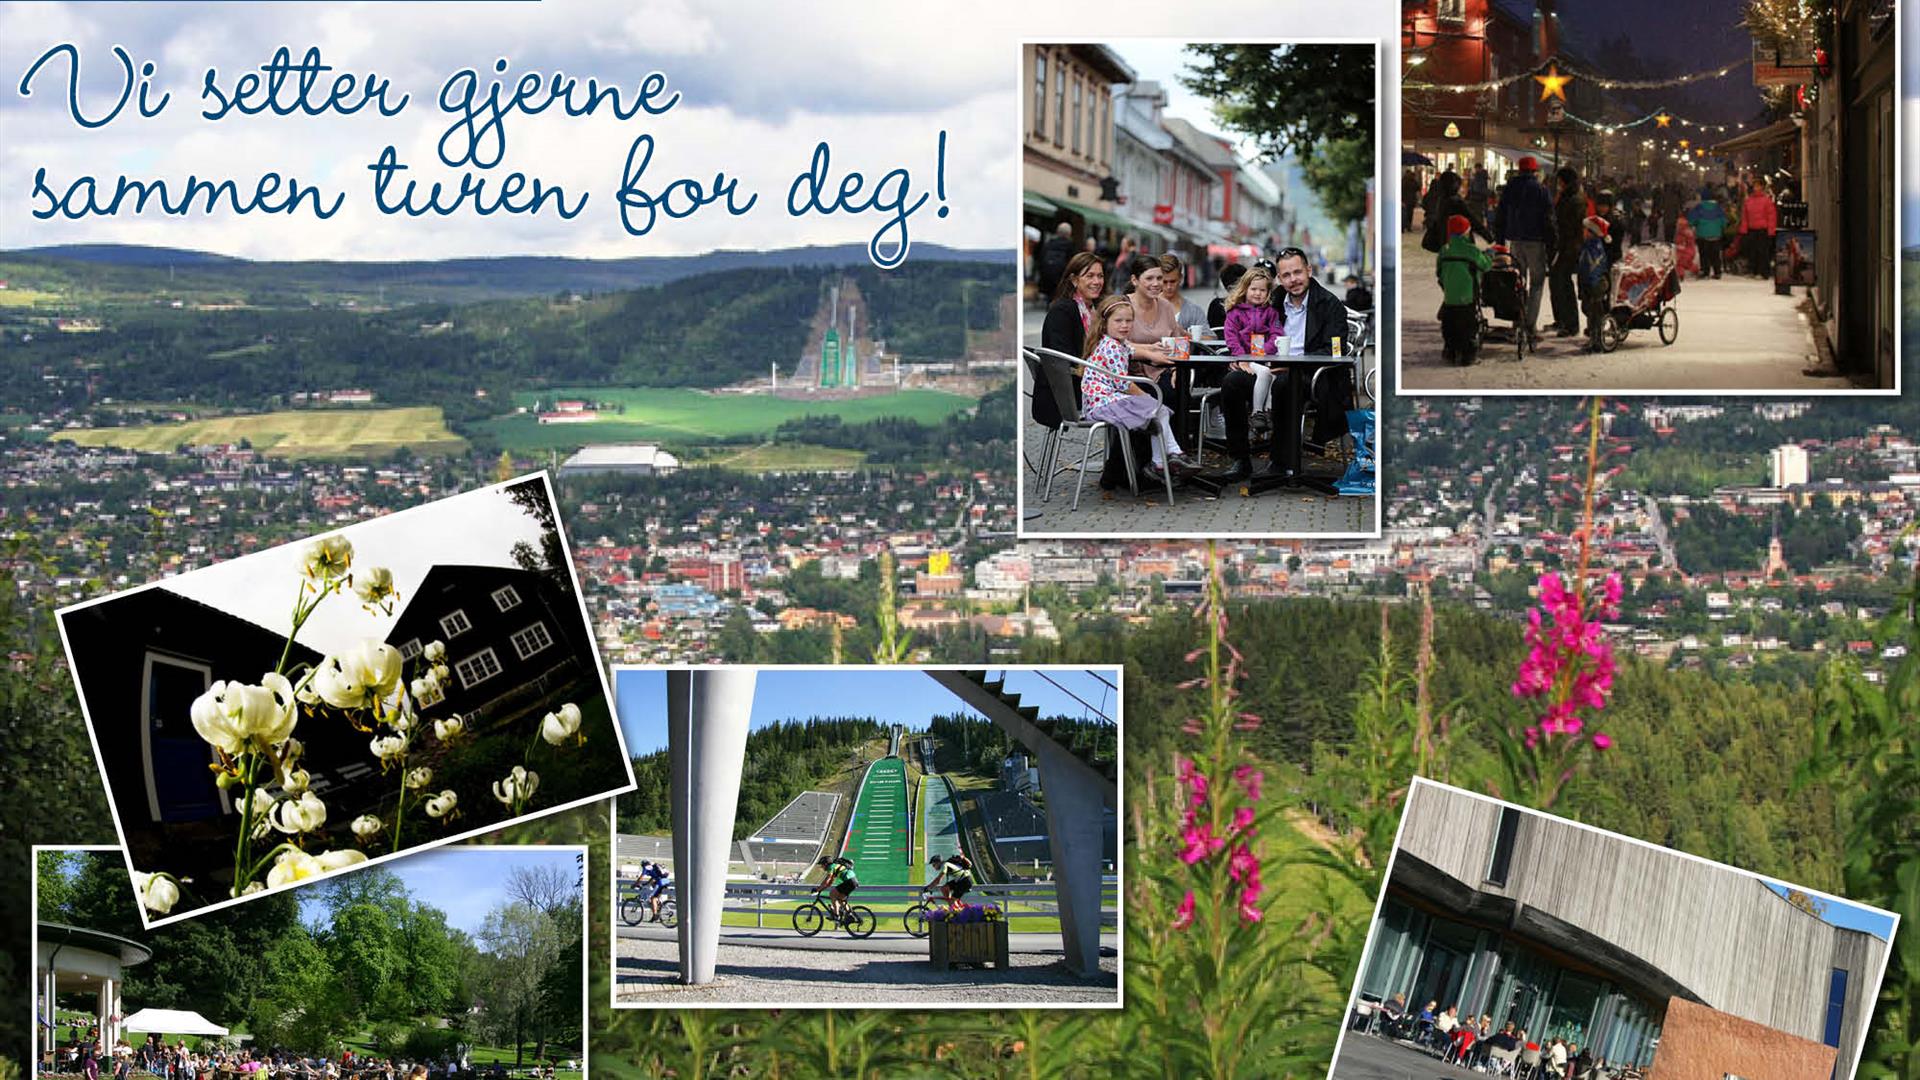 Different pictures from Lillehammer : Bjerkebæk, Lysgårdsbakkene, Gågata, Lillehammer Art Museum and the park